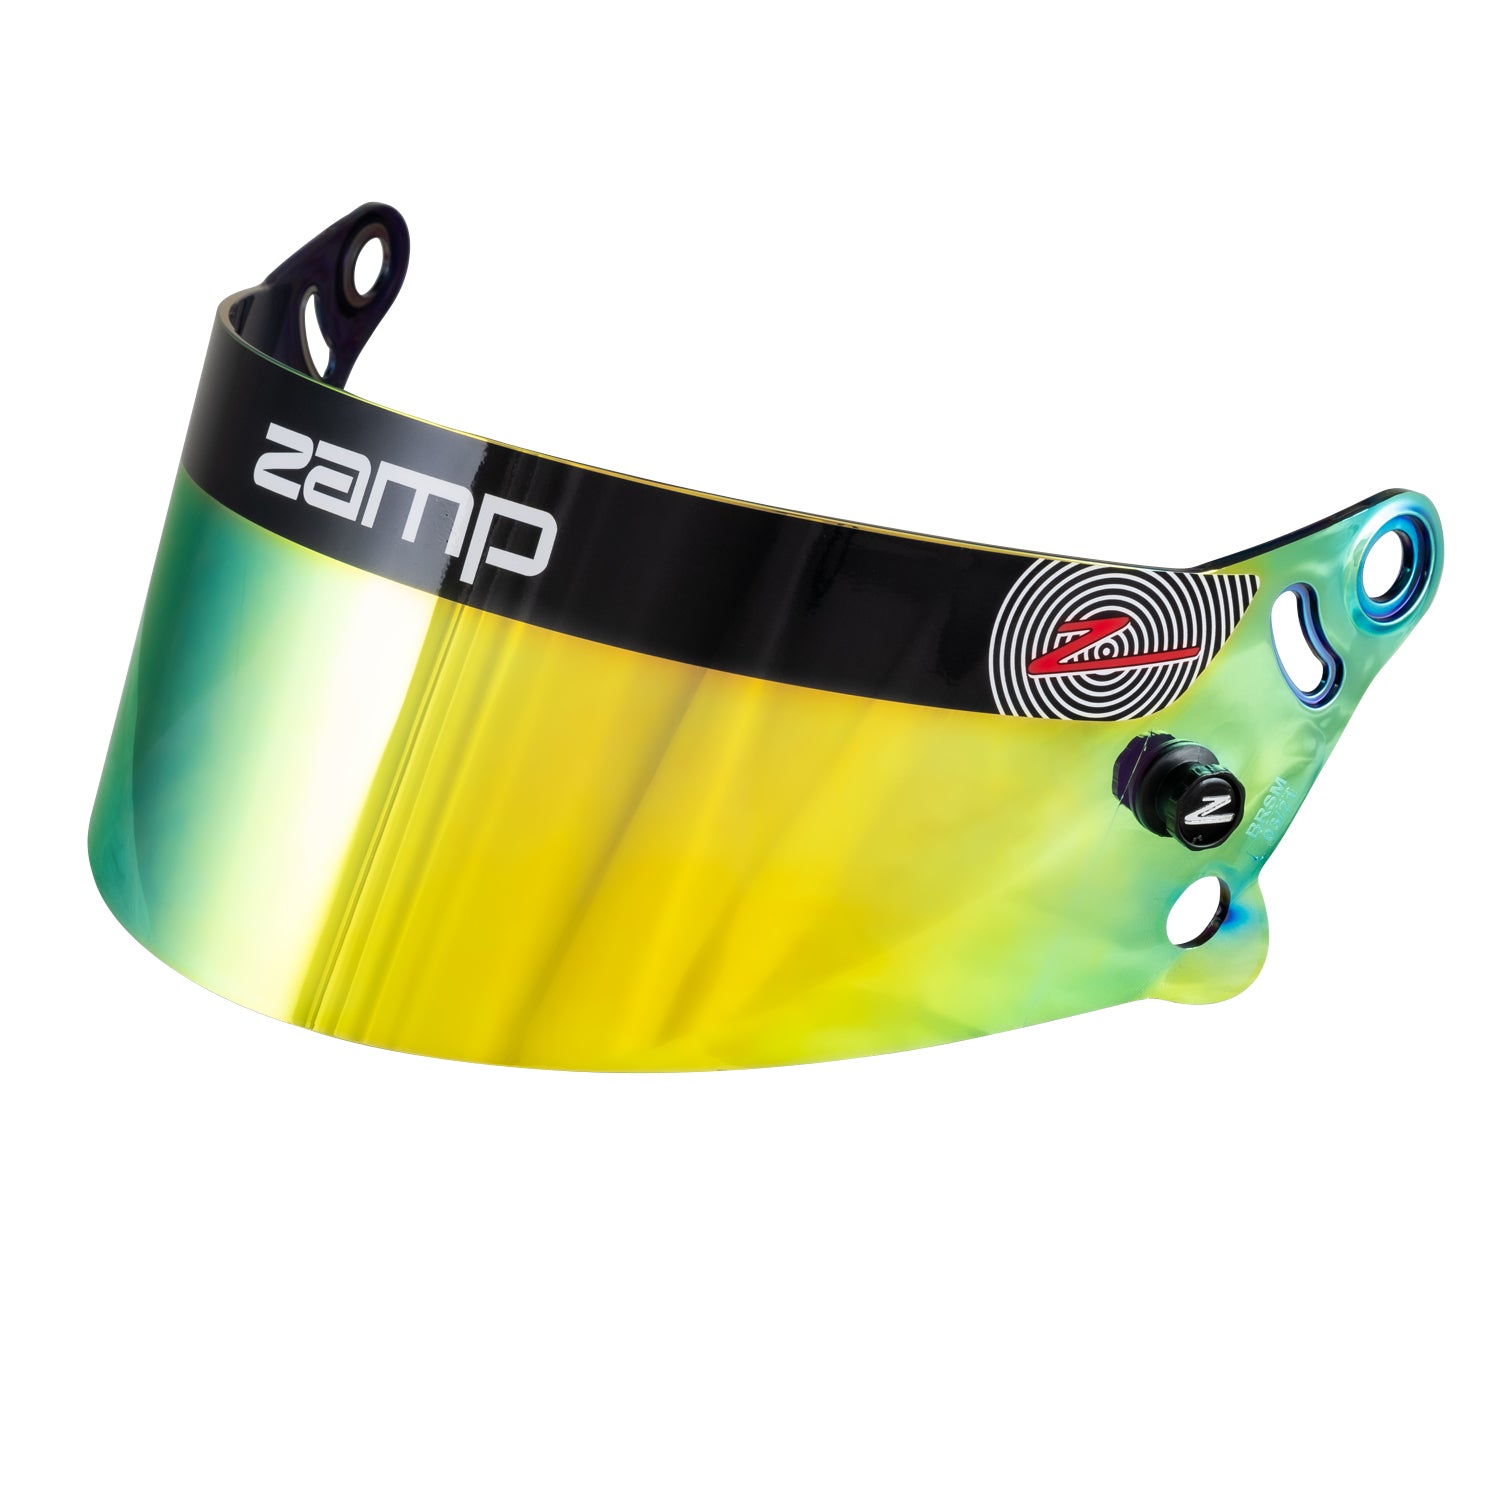 Zamp Z-20 FIA Series Prism Shields, 3 options